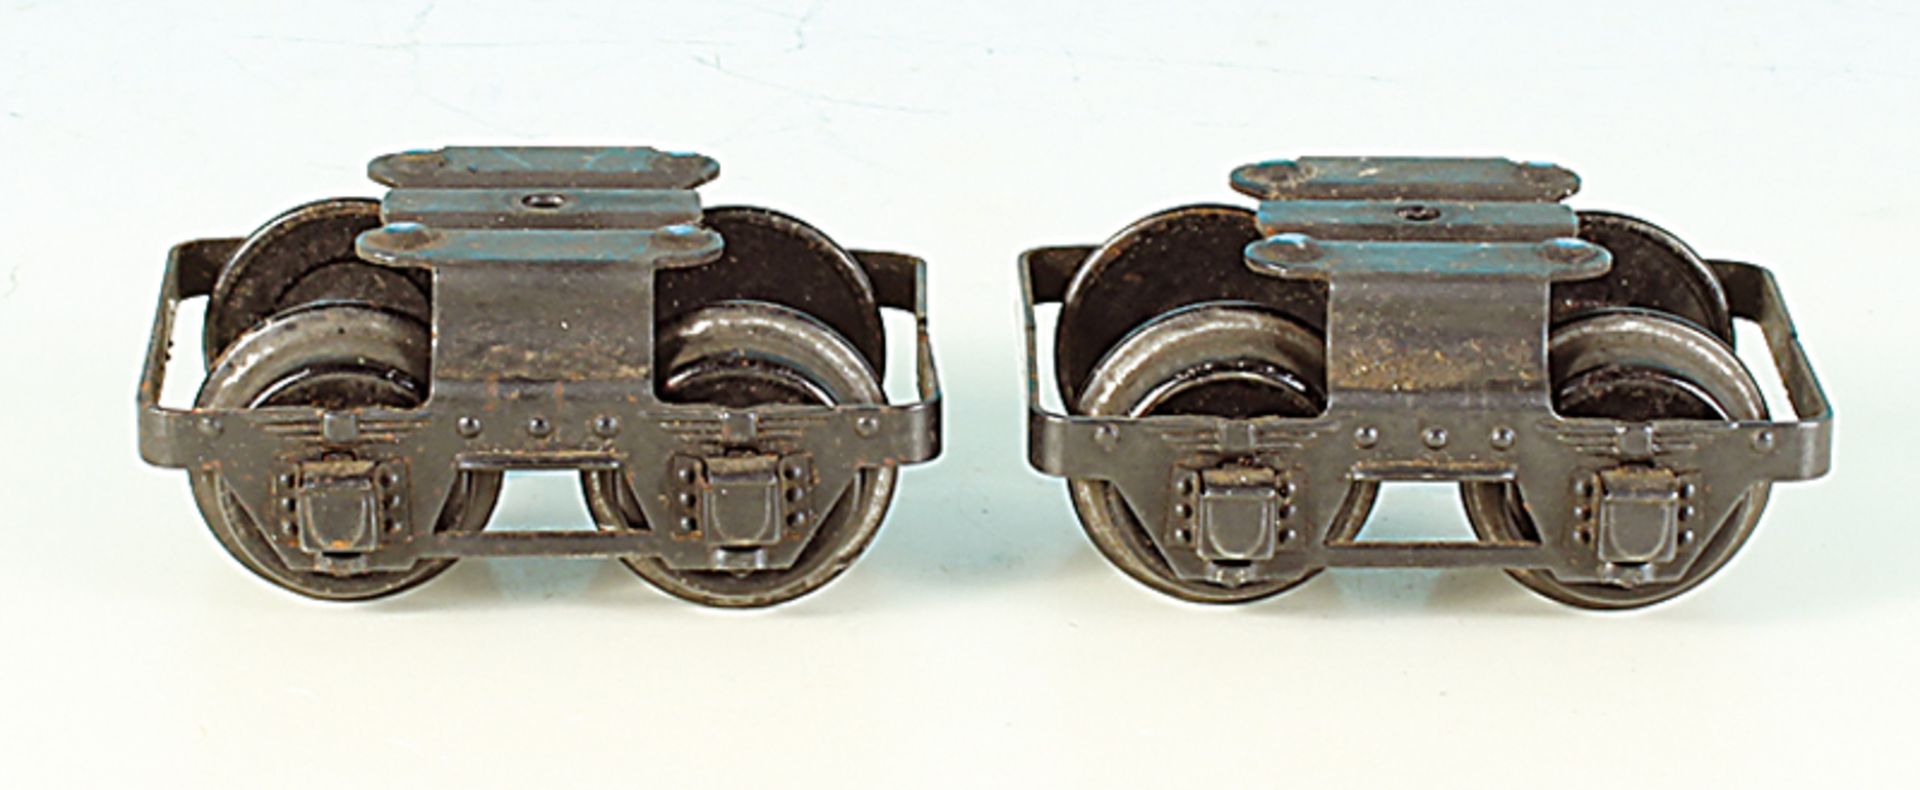 MARKLIN Drehgestelle fuer 24 - 5 cm Wagen - Spur 0